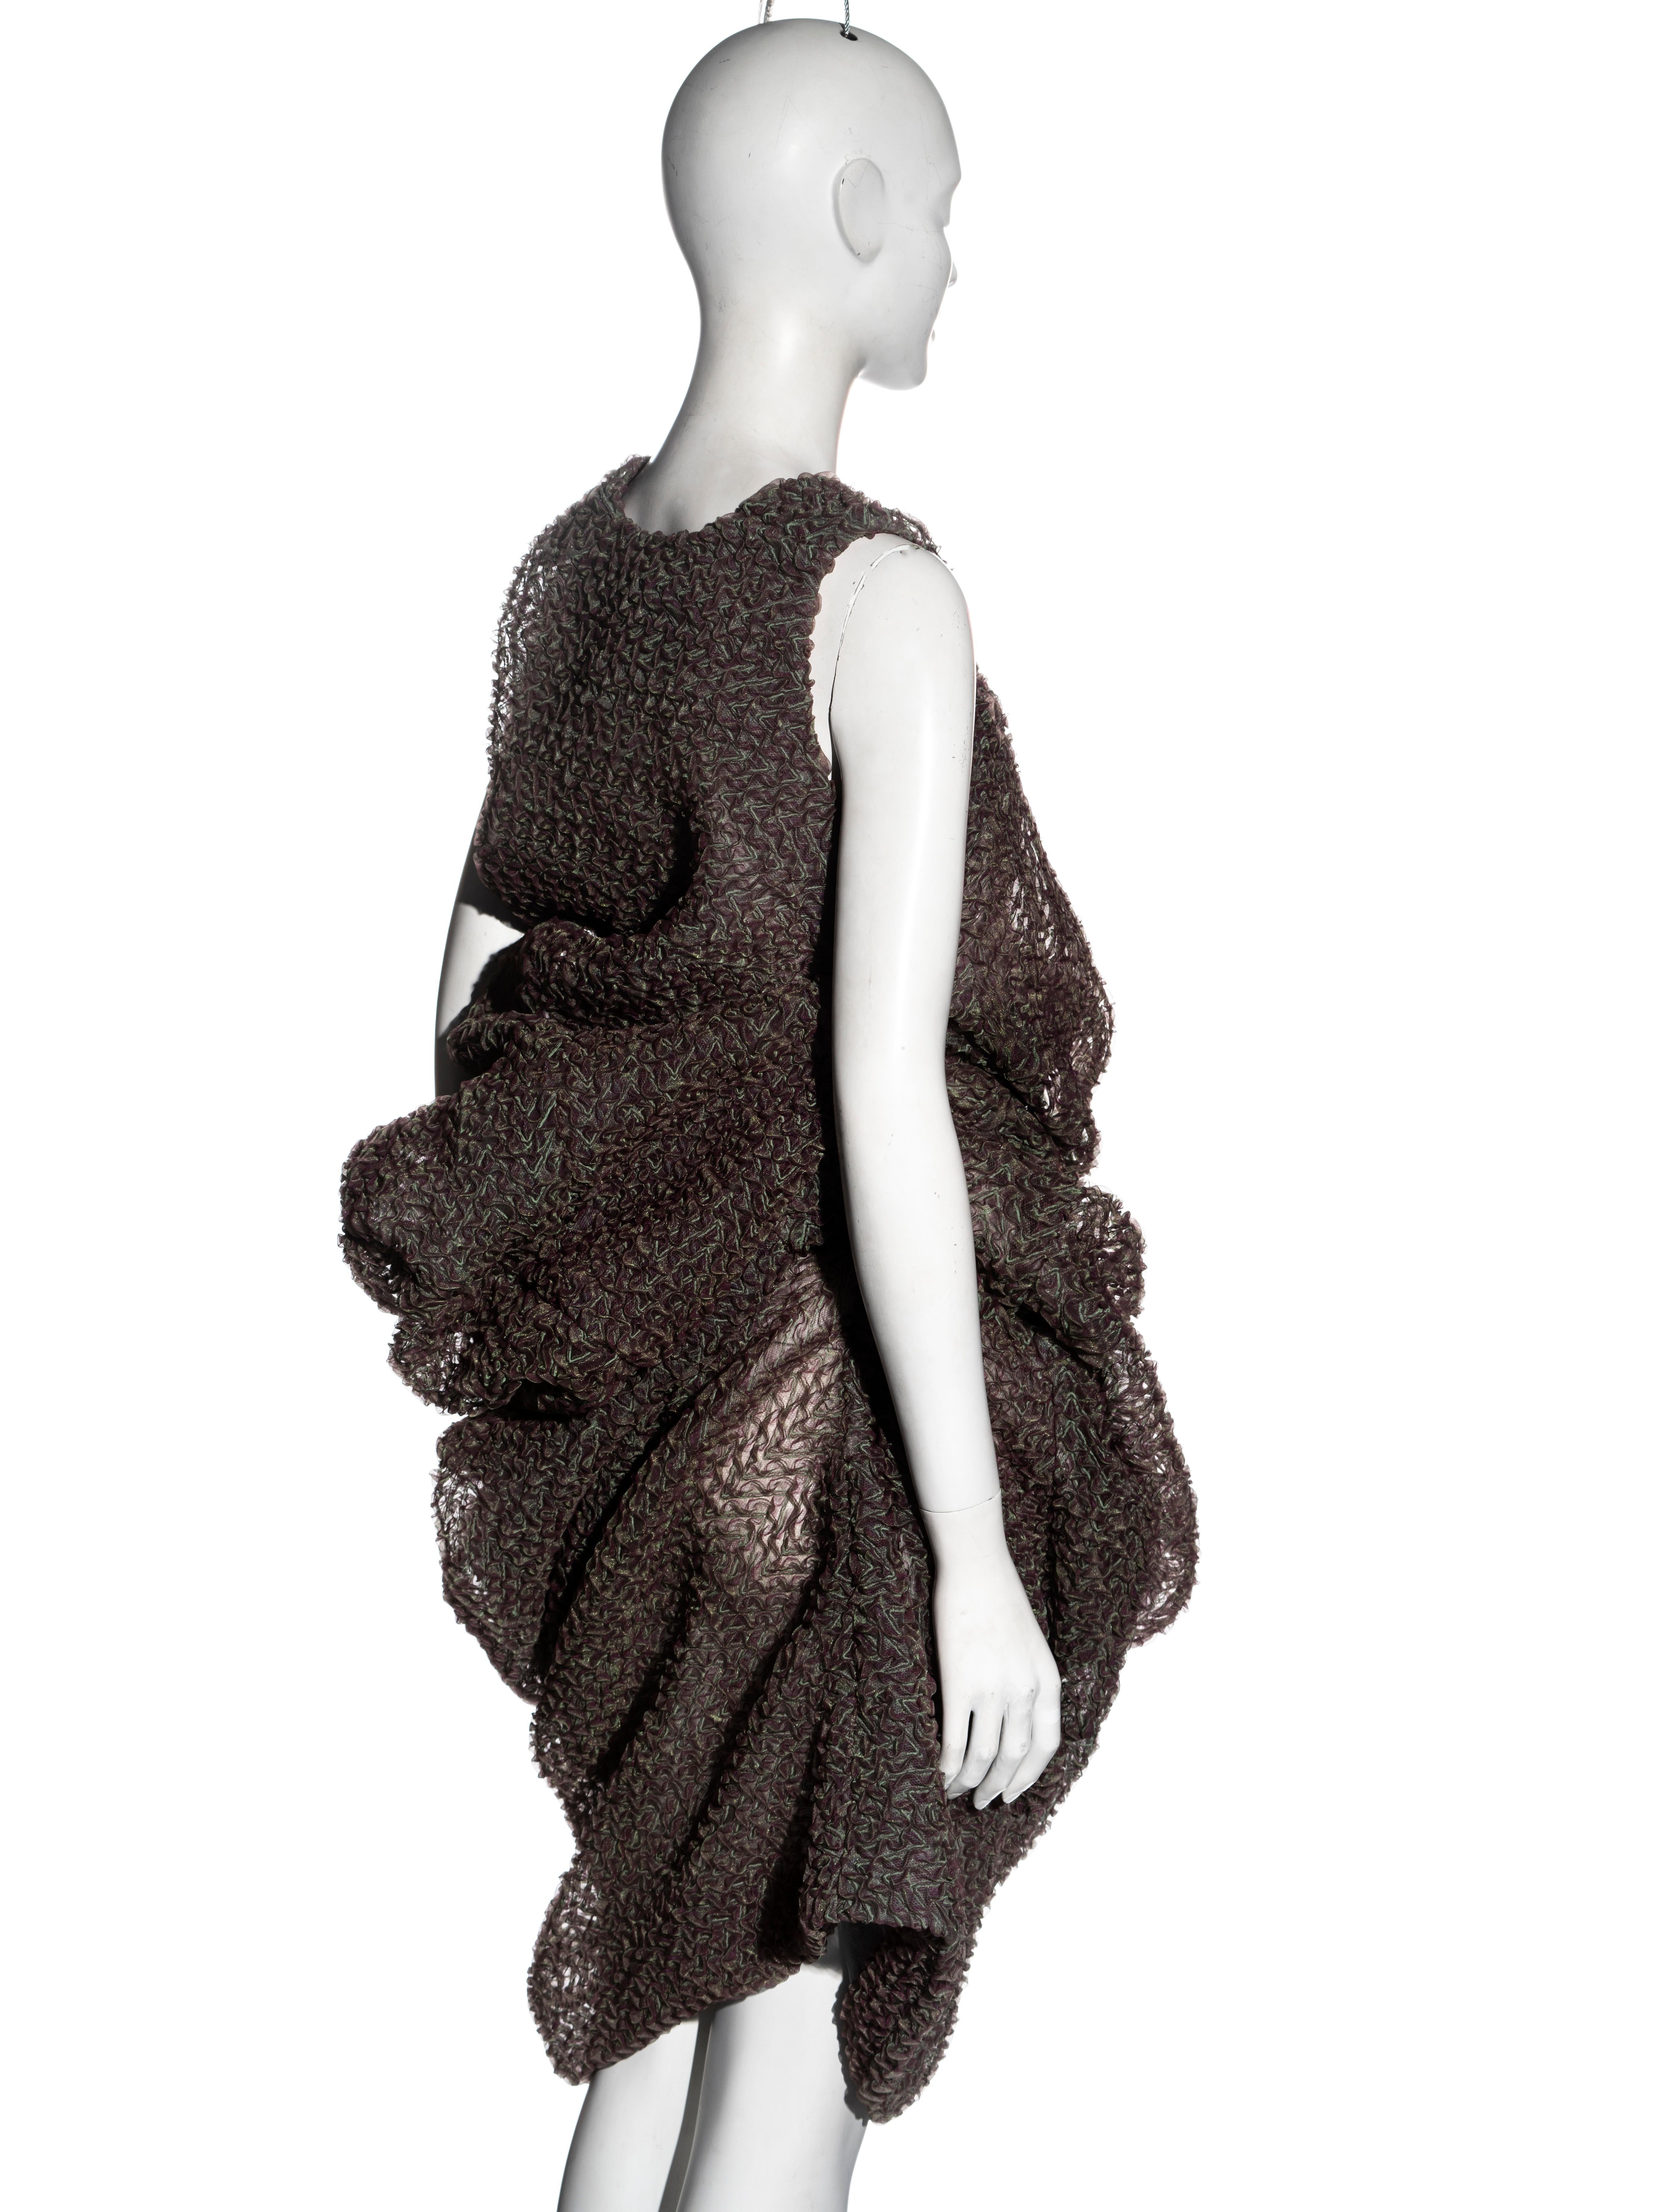 Comme des Garçons 'Body Meets Dress, Dress Meets Body' dress, ss 1997 5